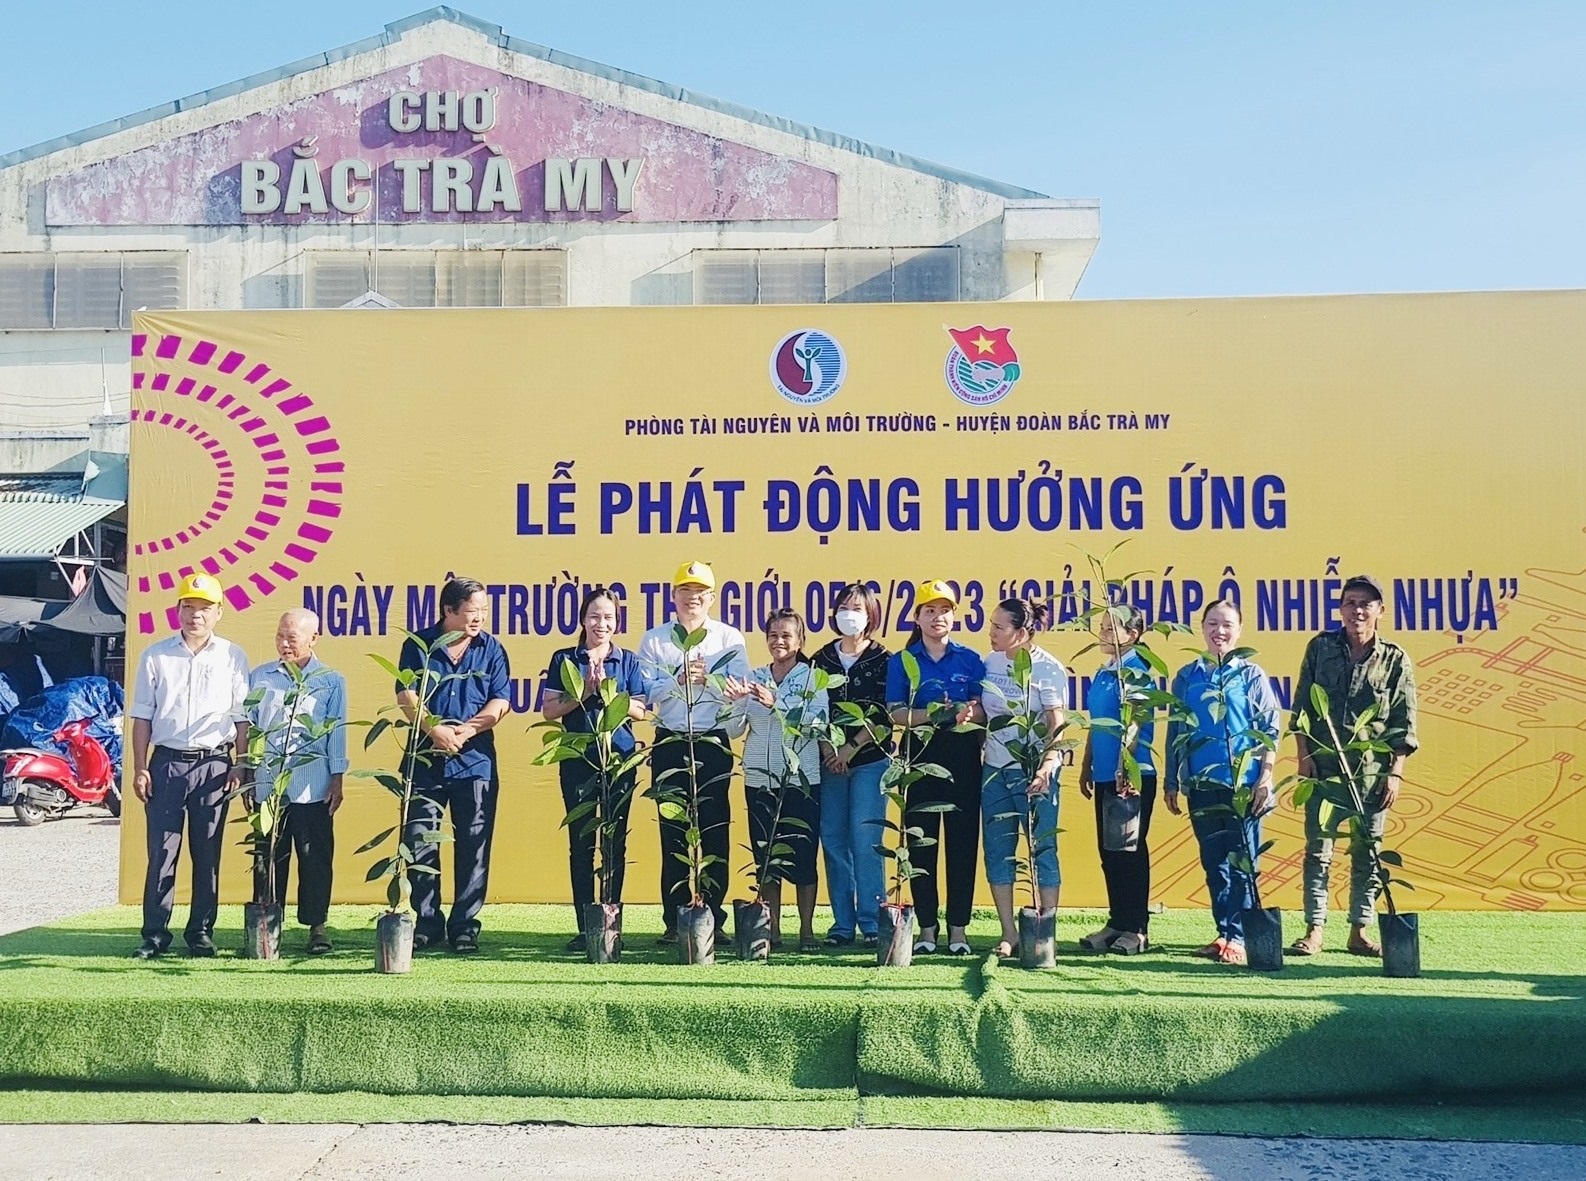 Quảng Nam: Bắc Trà My phát động hưởng ứng ngày Môi trường thế giới